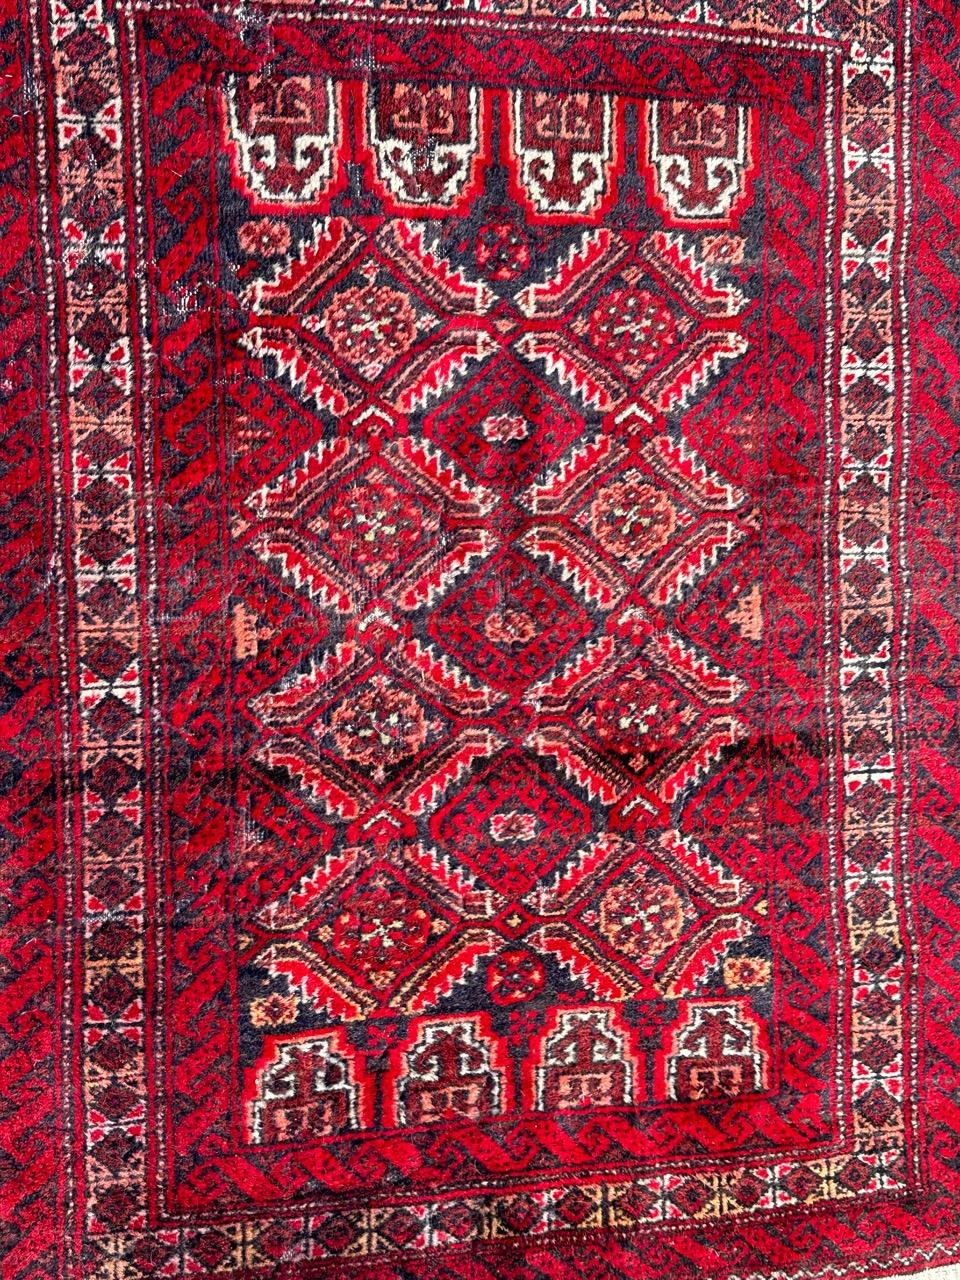 Joli tapis turkmène Baluch du milieu du siècle avec des motifs stylisés et de belles couleurs avec du rouge, du violet, de l'orange, du marron, du blanc et du noir, entièrement noué à la main avec de la laine sur une base de coton.
Quelques usures